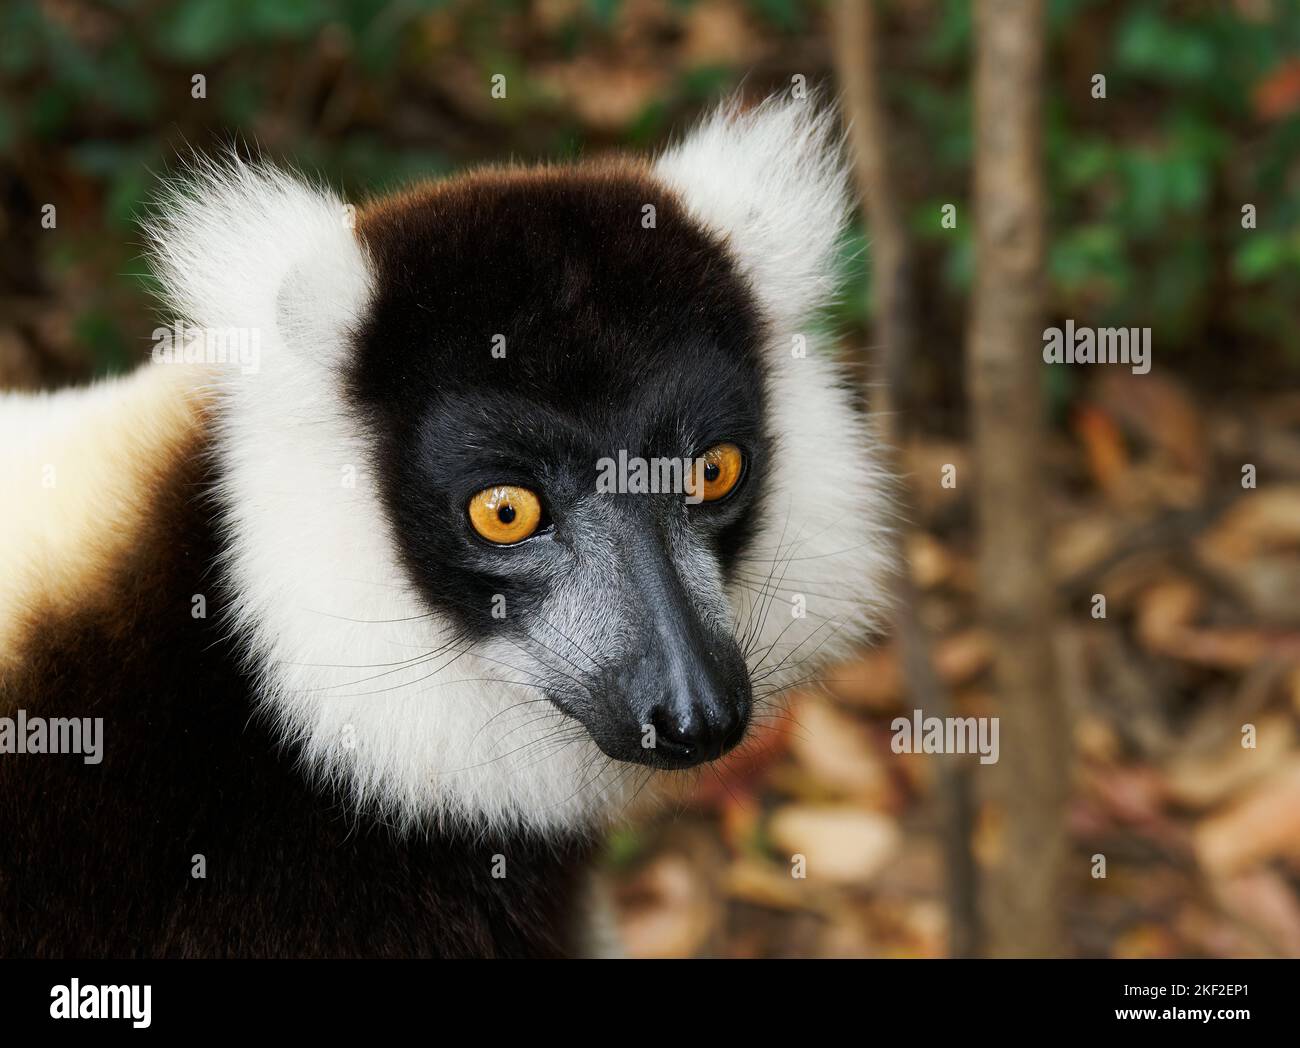 Lemur blanco y negro - Varecia variegata Especie en peligro de extinción de lemur resquebrado, endémica de Madagascar, mamífero saltante y trepador con relación a m. Foto de stock